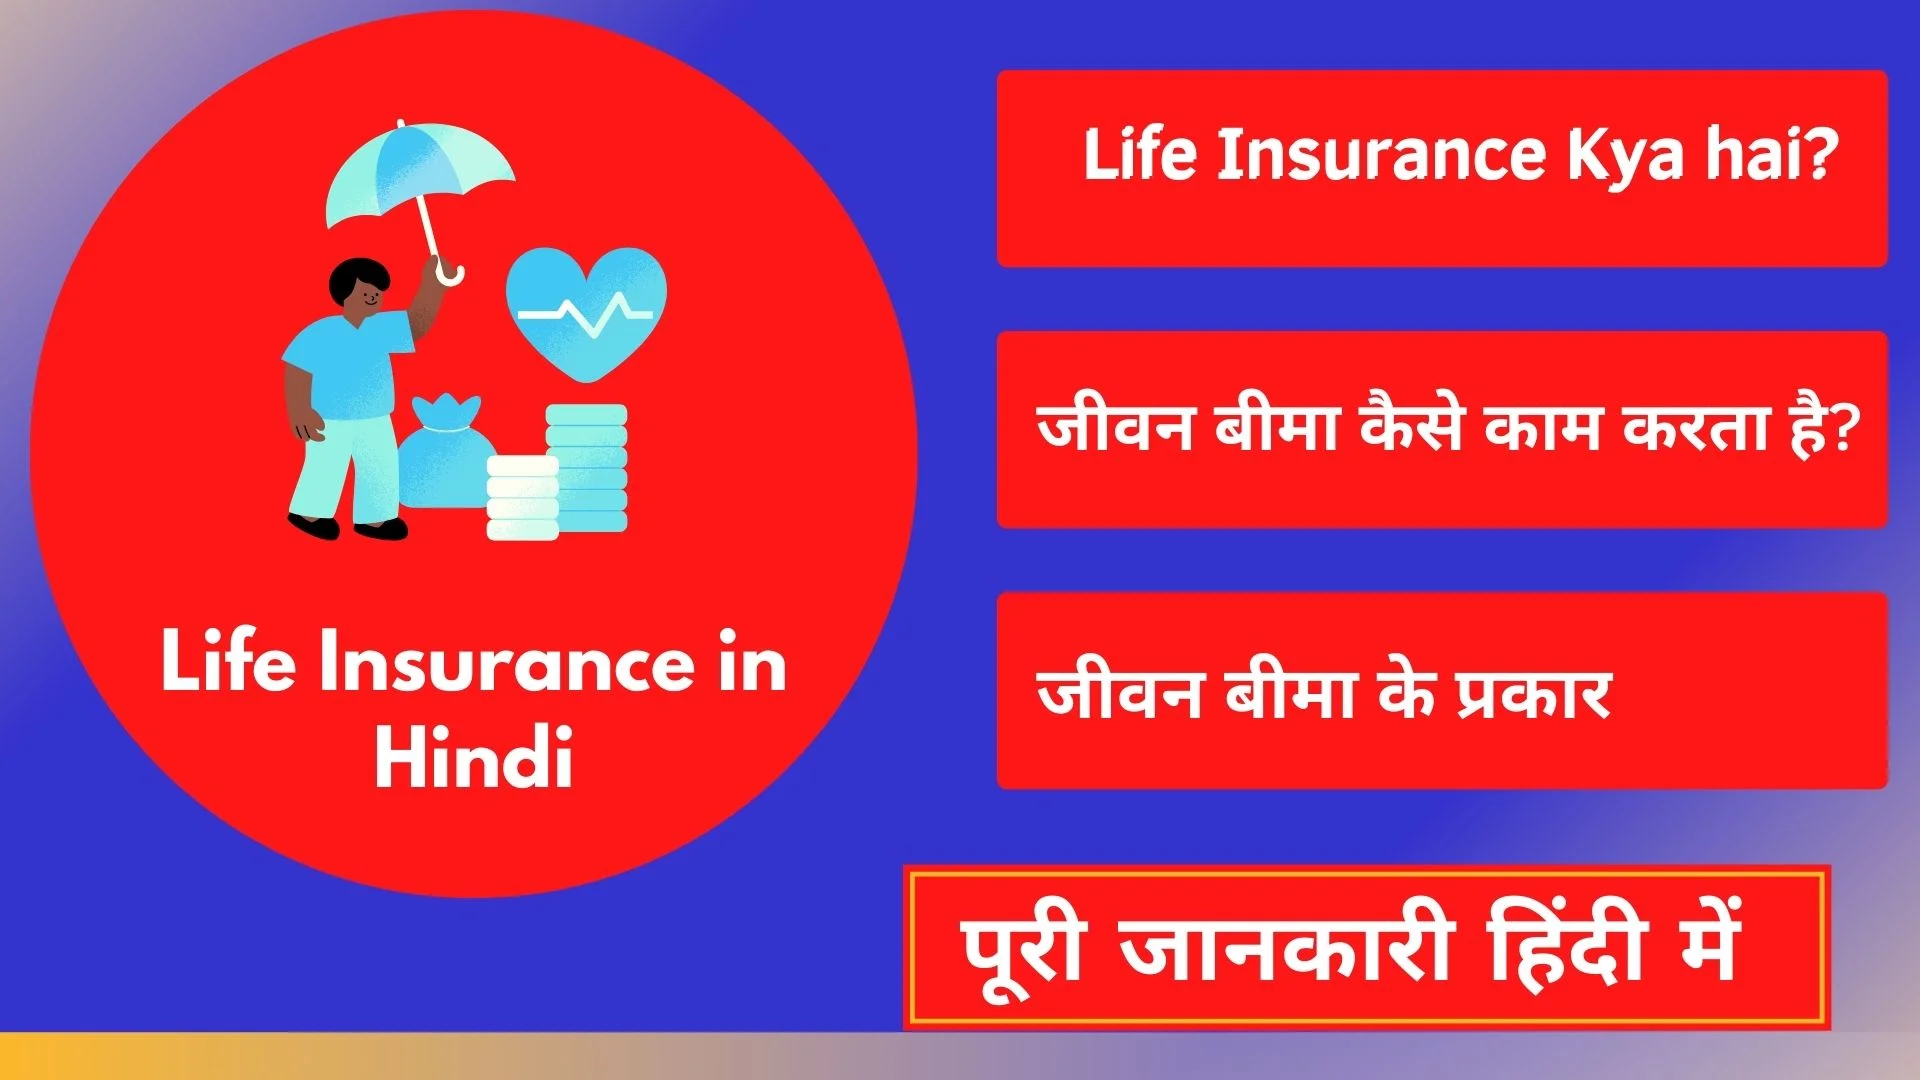 Life Insurance Kya hai